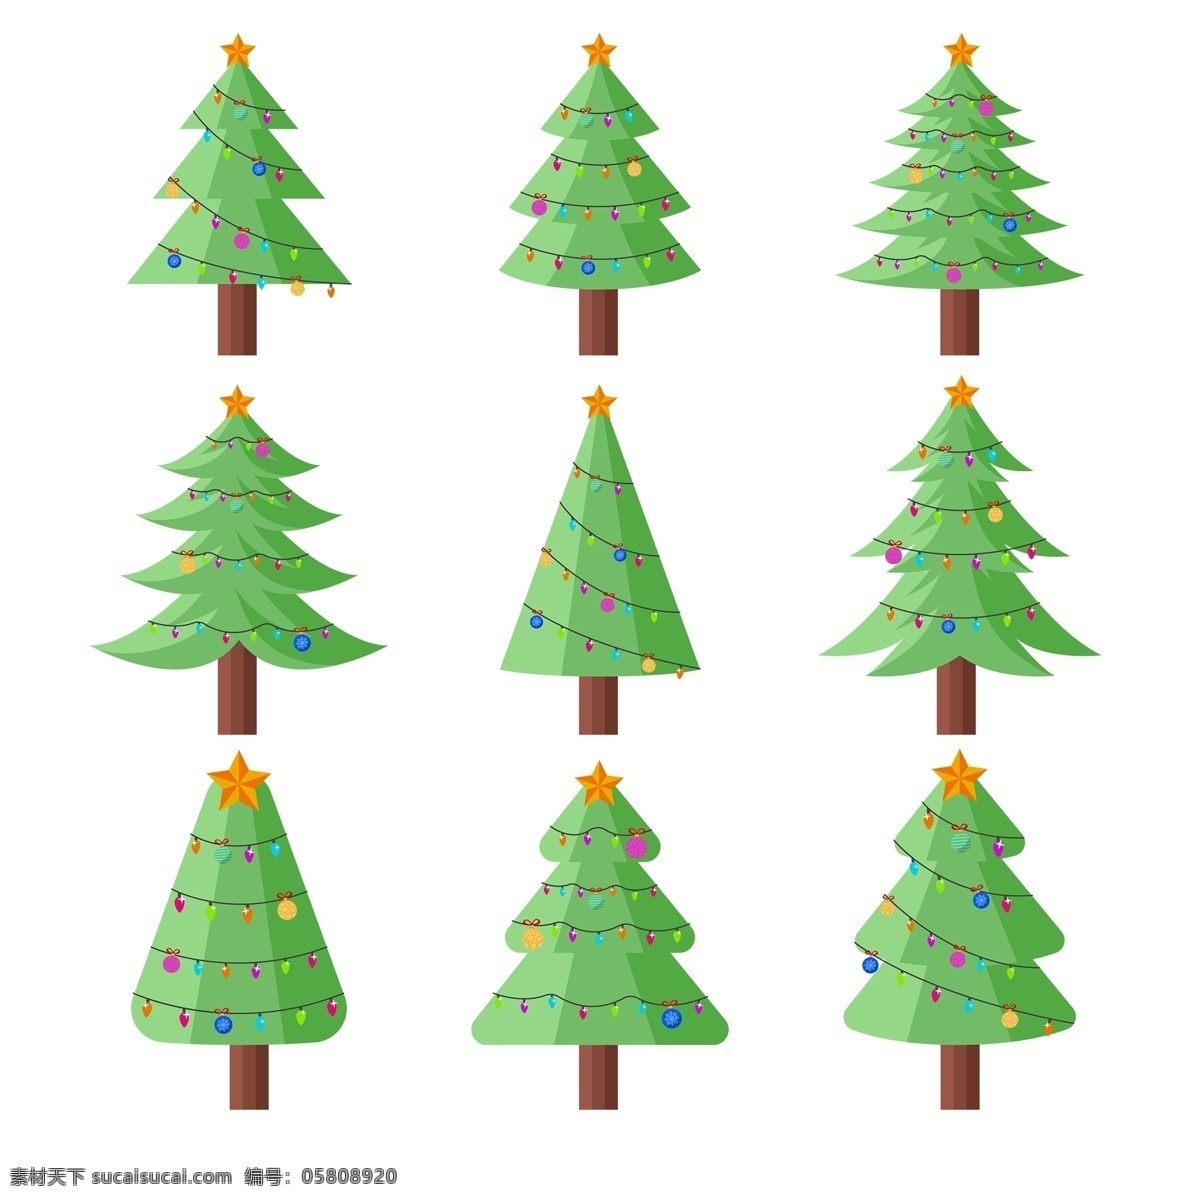 绿色 手绘 卡通 圣诞树 免 抠 透明 图 圣诞树素材 圣诞树装饰图 圣诞树元素 圣诞节树 圣诞元素 节日元素